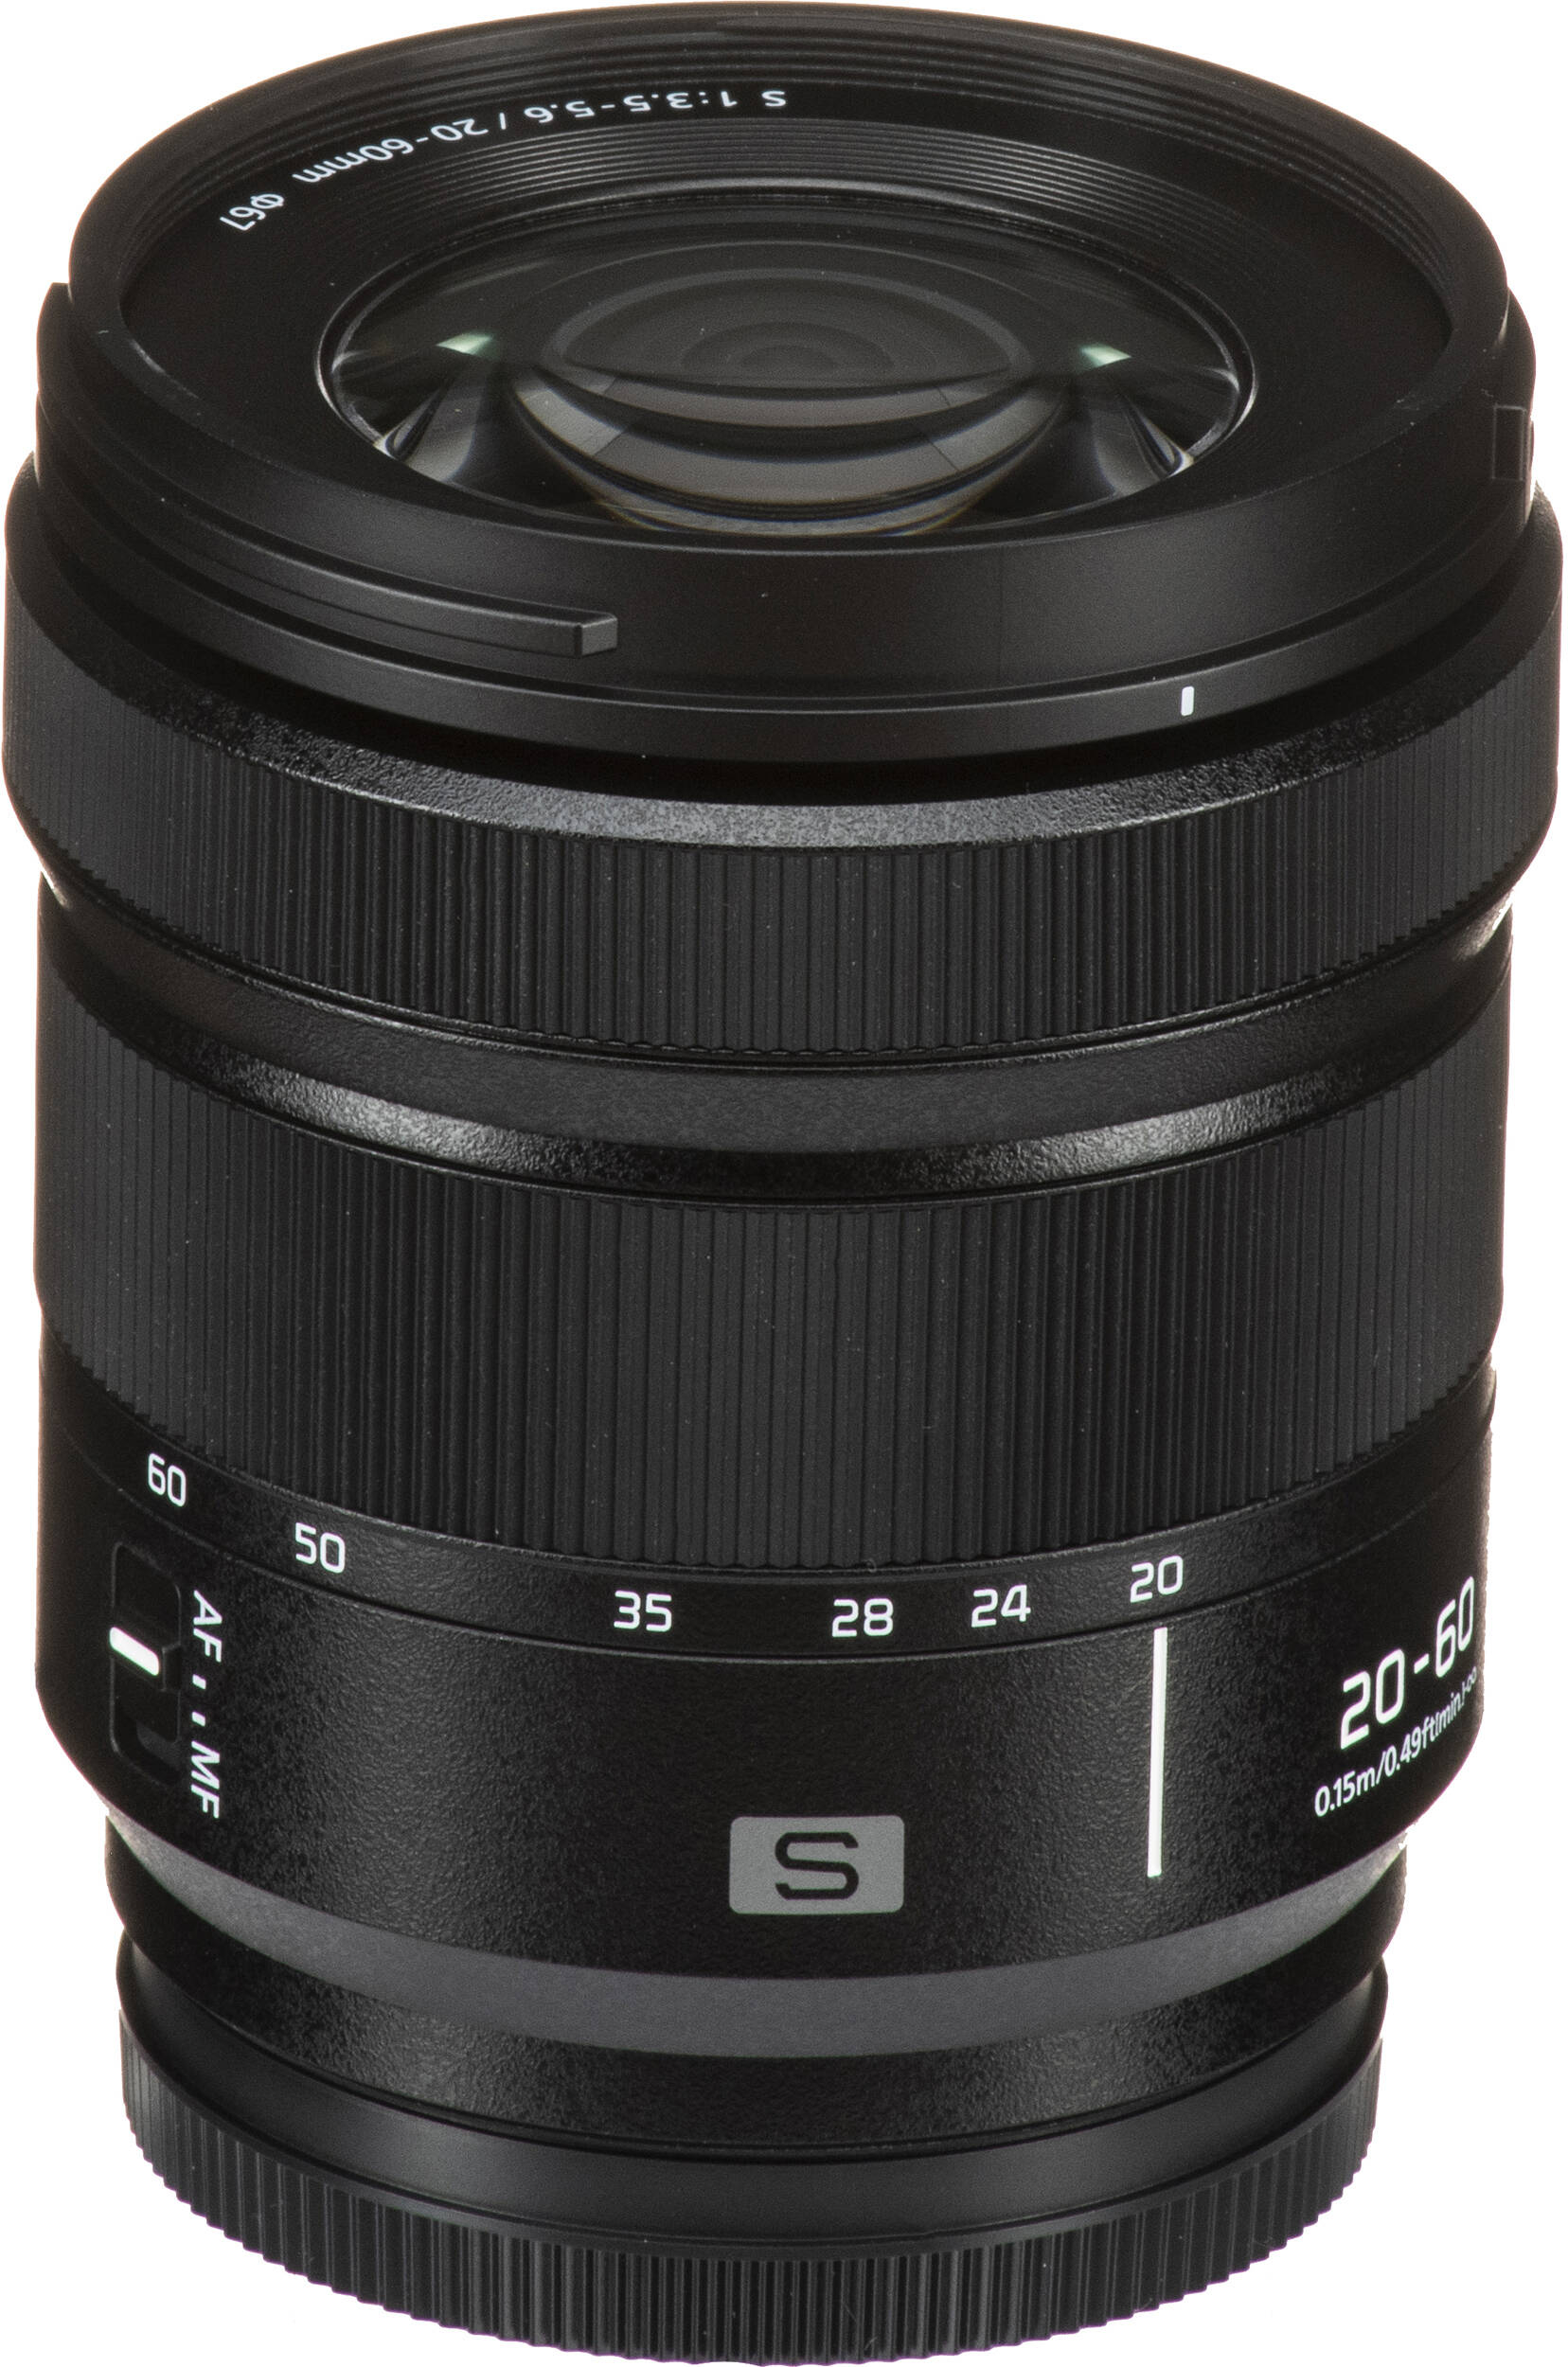 Фотоапарат Panasonic Lumix DC-S9 + 20-60mm f/3.5-5.6 Dark Olive (DC-S9KE-G)фото22